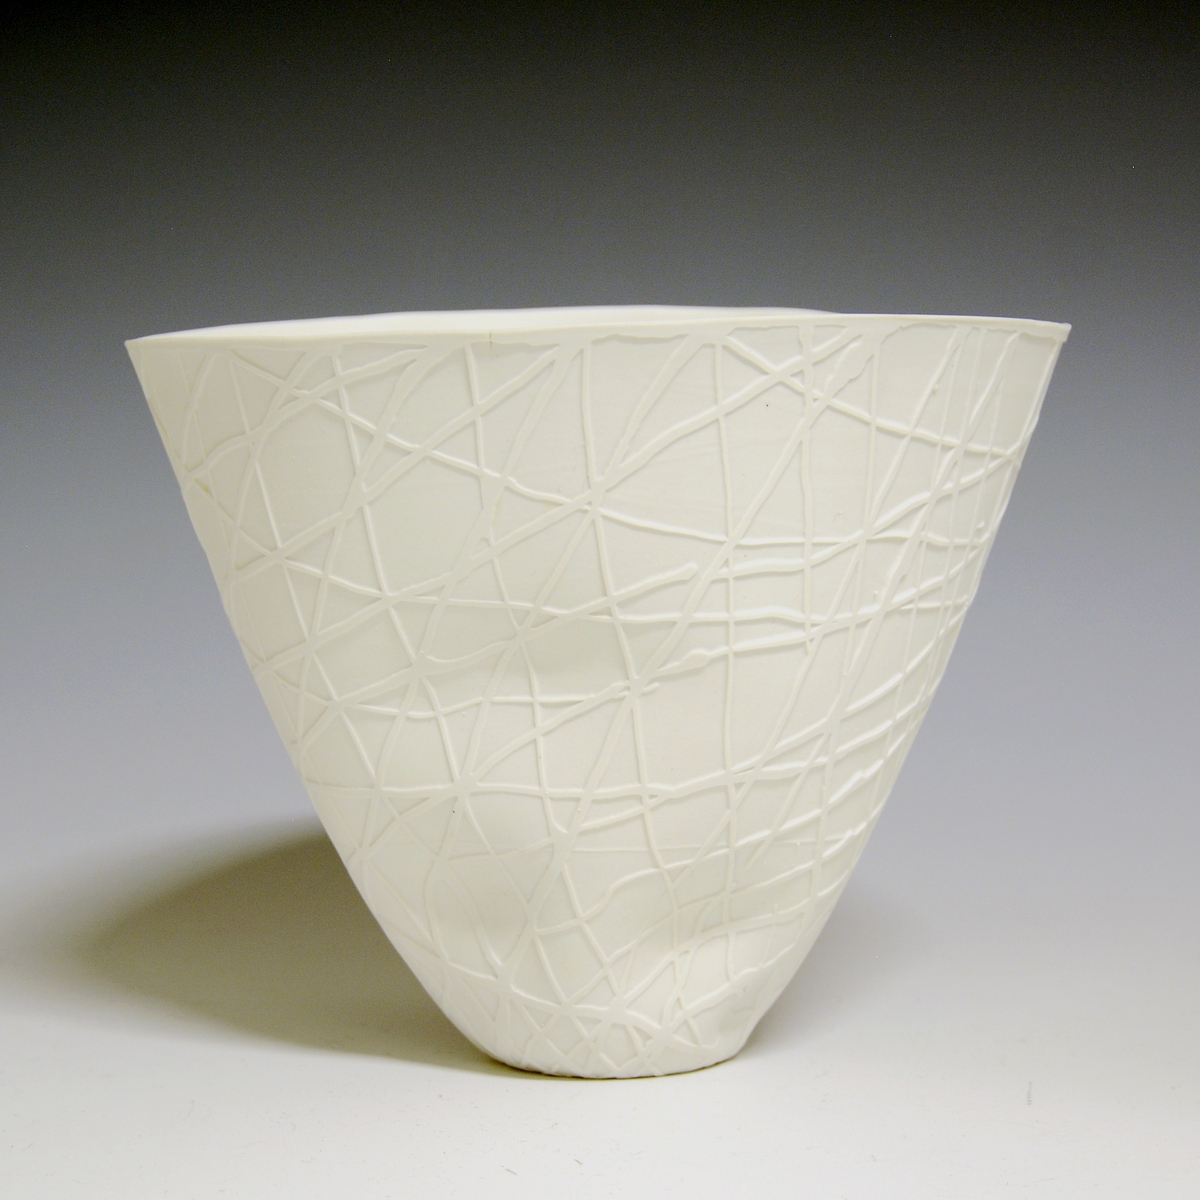 Vase av porselen, hvit uglasert. Smal bunn, skråner utover i en vid åpning. Sandblåst dekor. Dekorert i råbrent tilstand med flytende latex, sandmattet. Latexen fjernet før høybrenning.